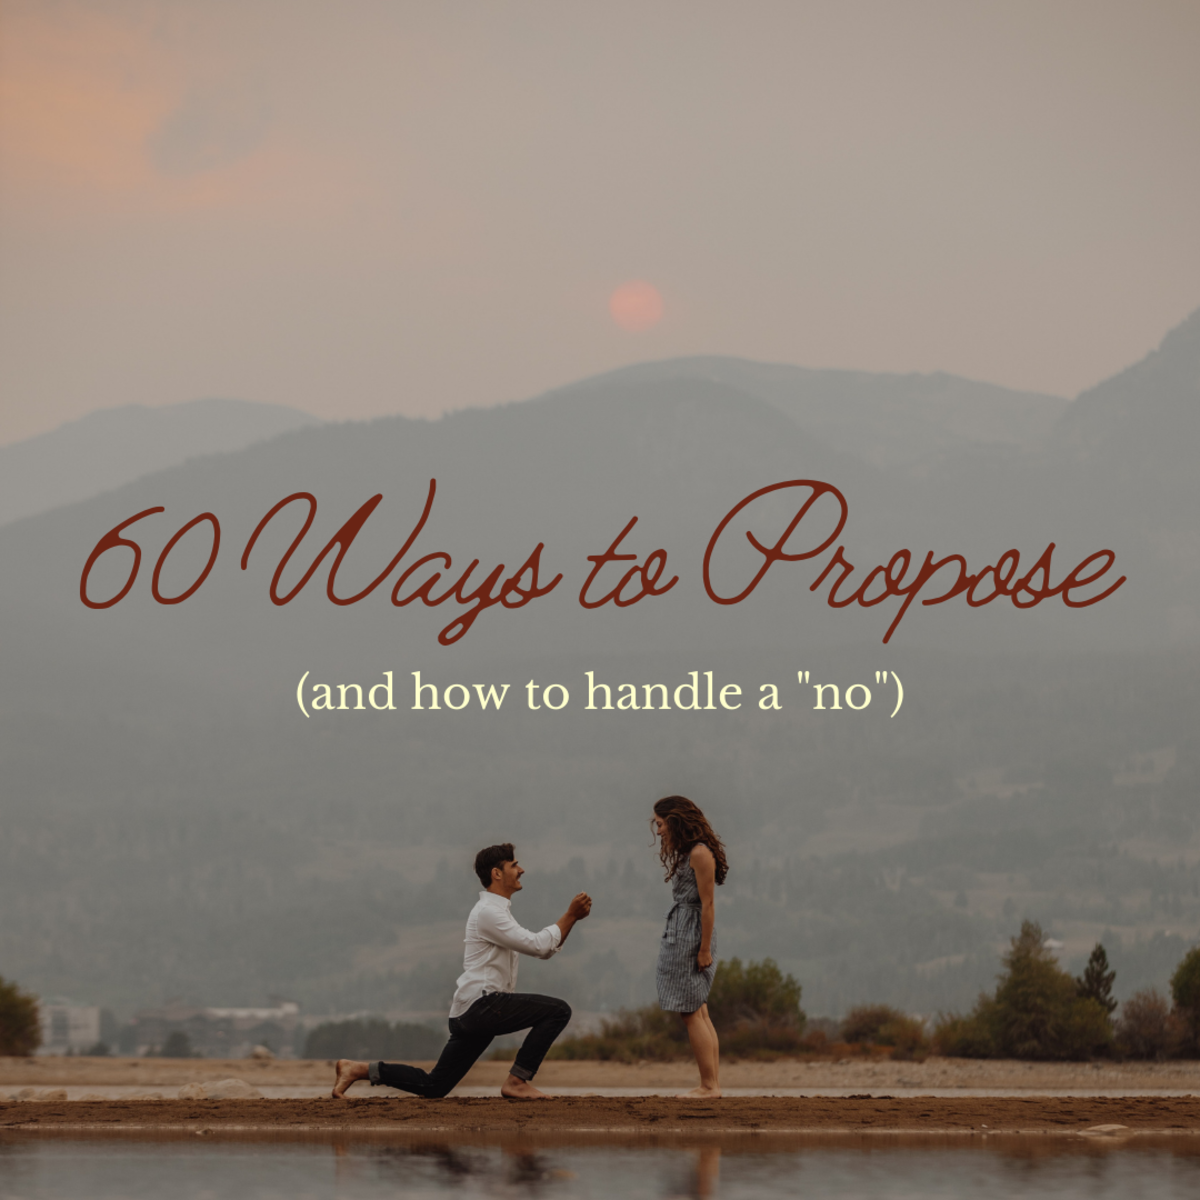 60 Ways to Propose